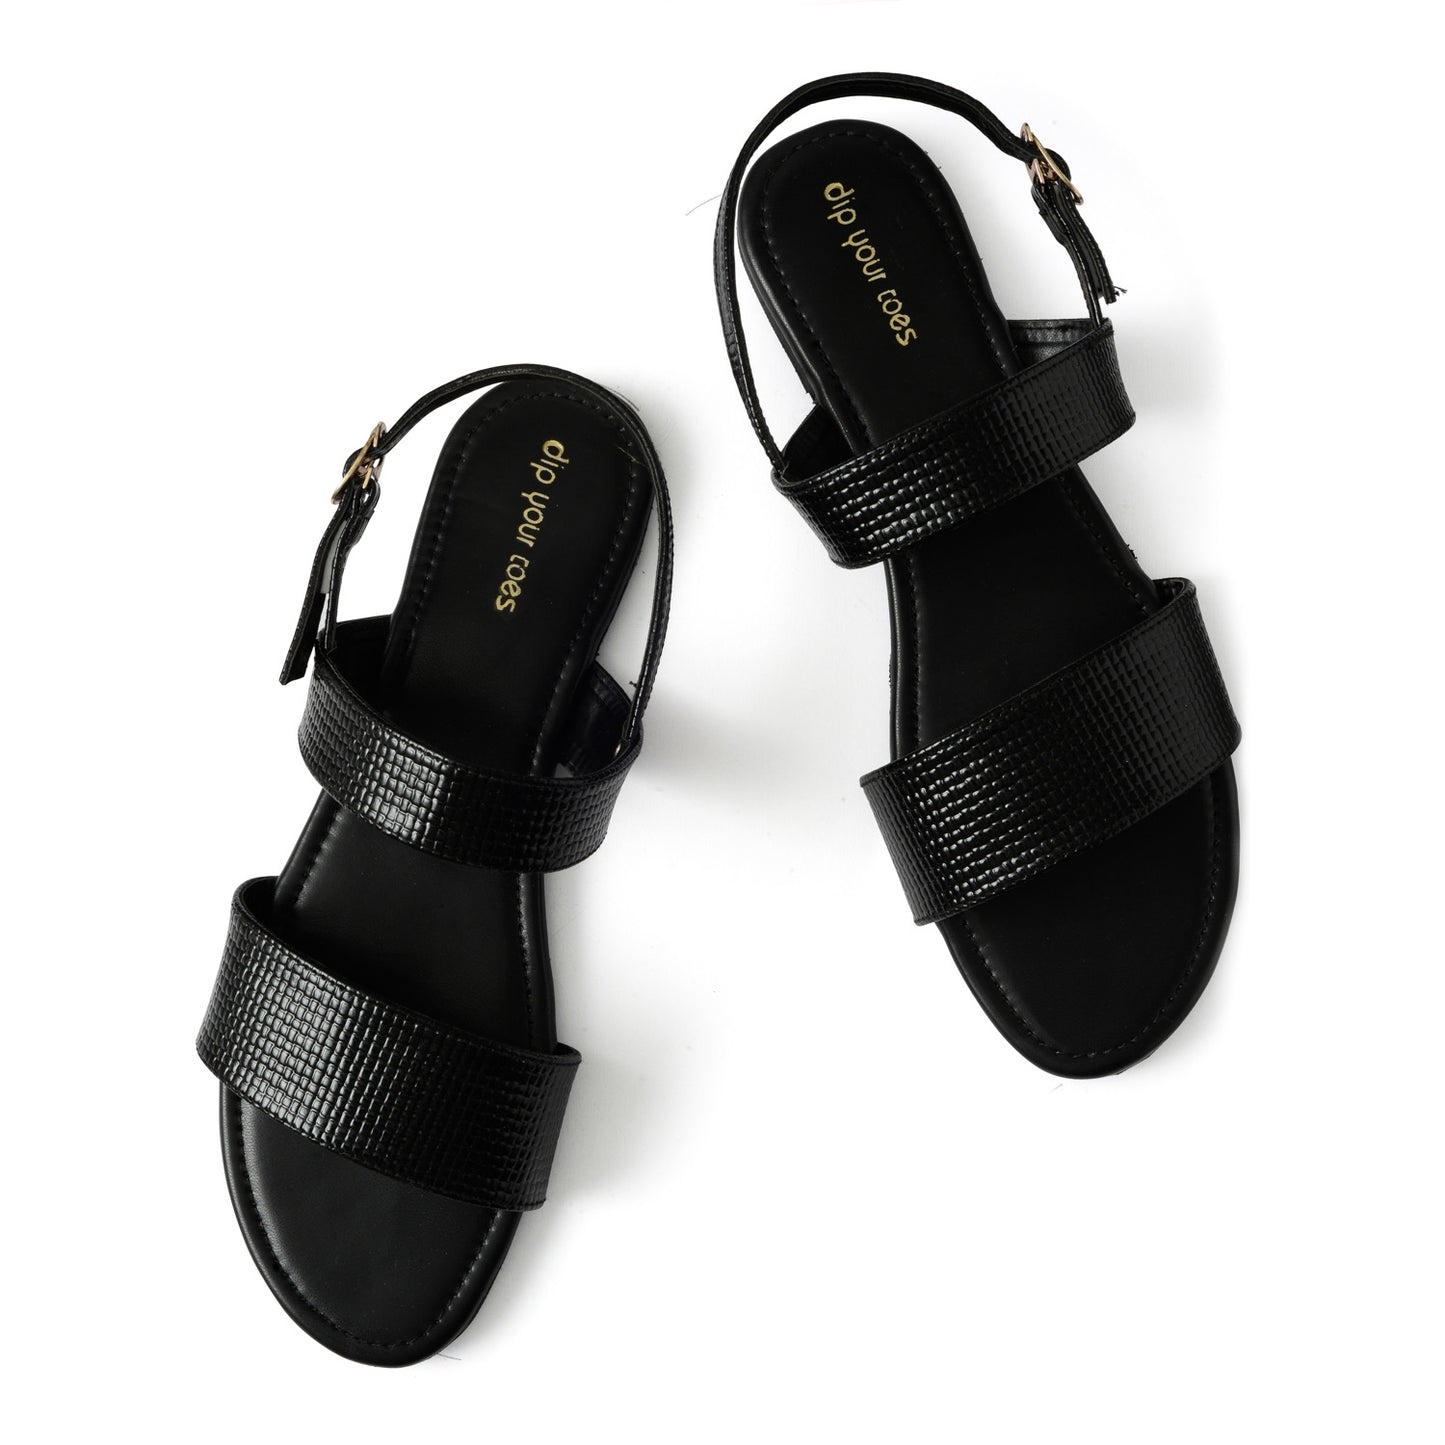 Black textured twin strap sandals